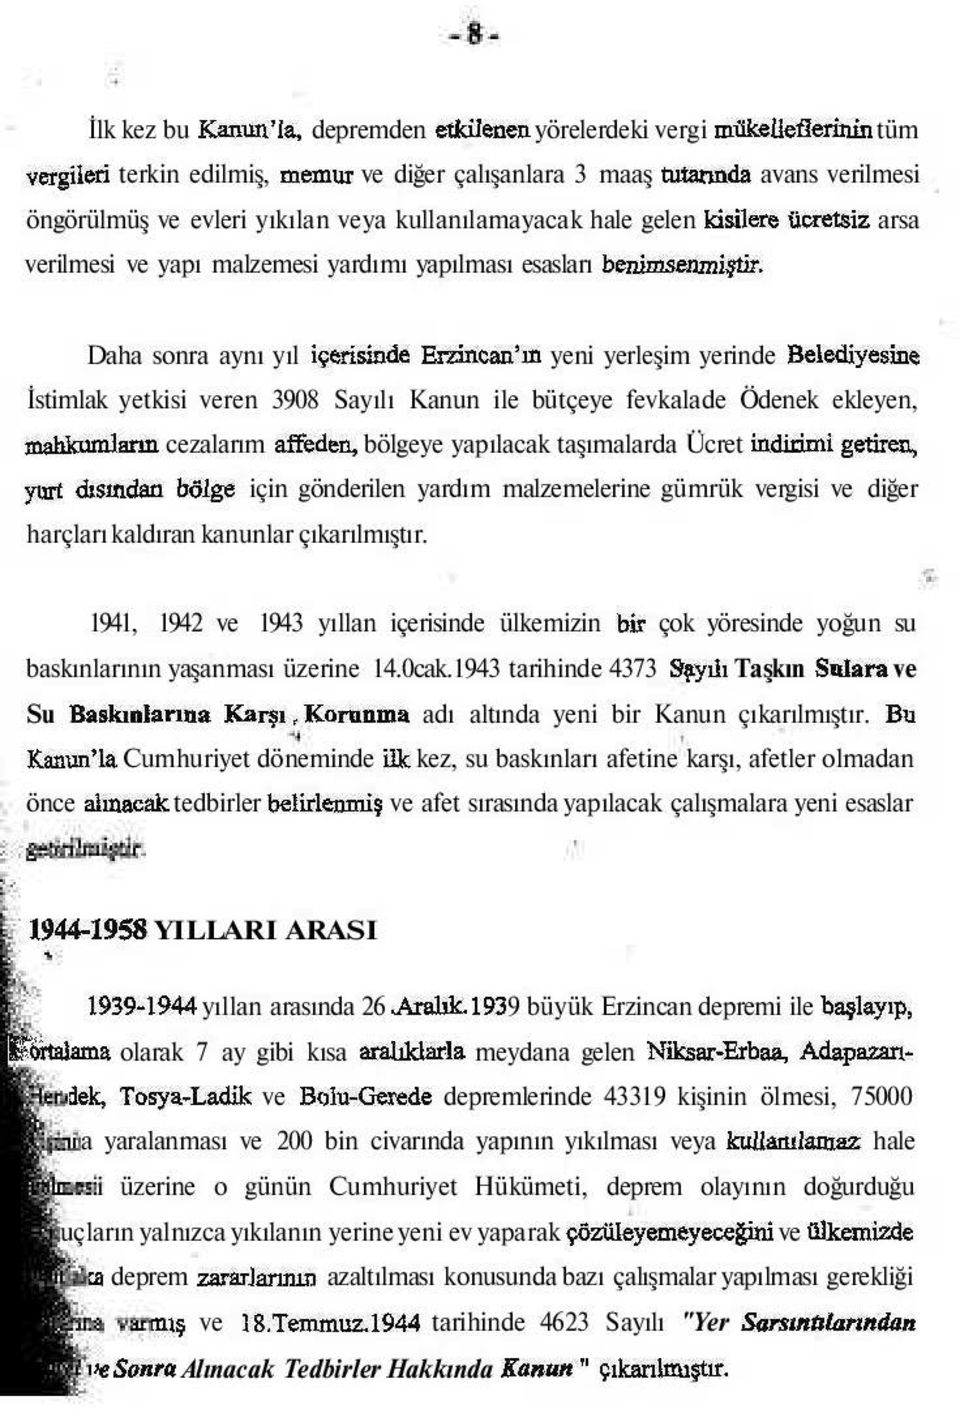 Daha sonra aynı yıl içerisinde Erzincan'ın yeni yerleşim yerinde Belediyesine İstimlak yetkisi veren 3908 Sayılı Kanun ile bütçeye fevkalade Ödenek ekleyen, mahkumların cezalarım affeden, bölgeye